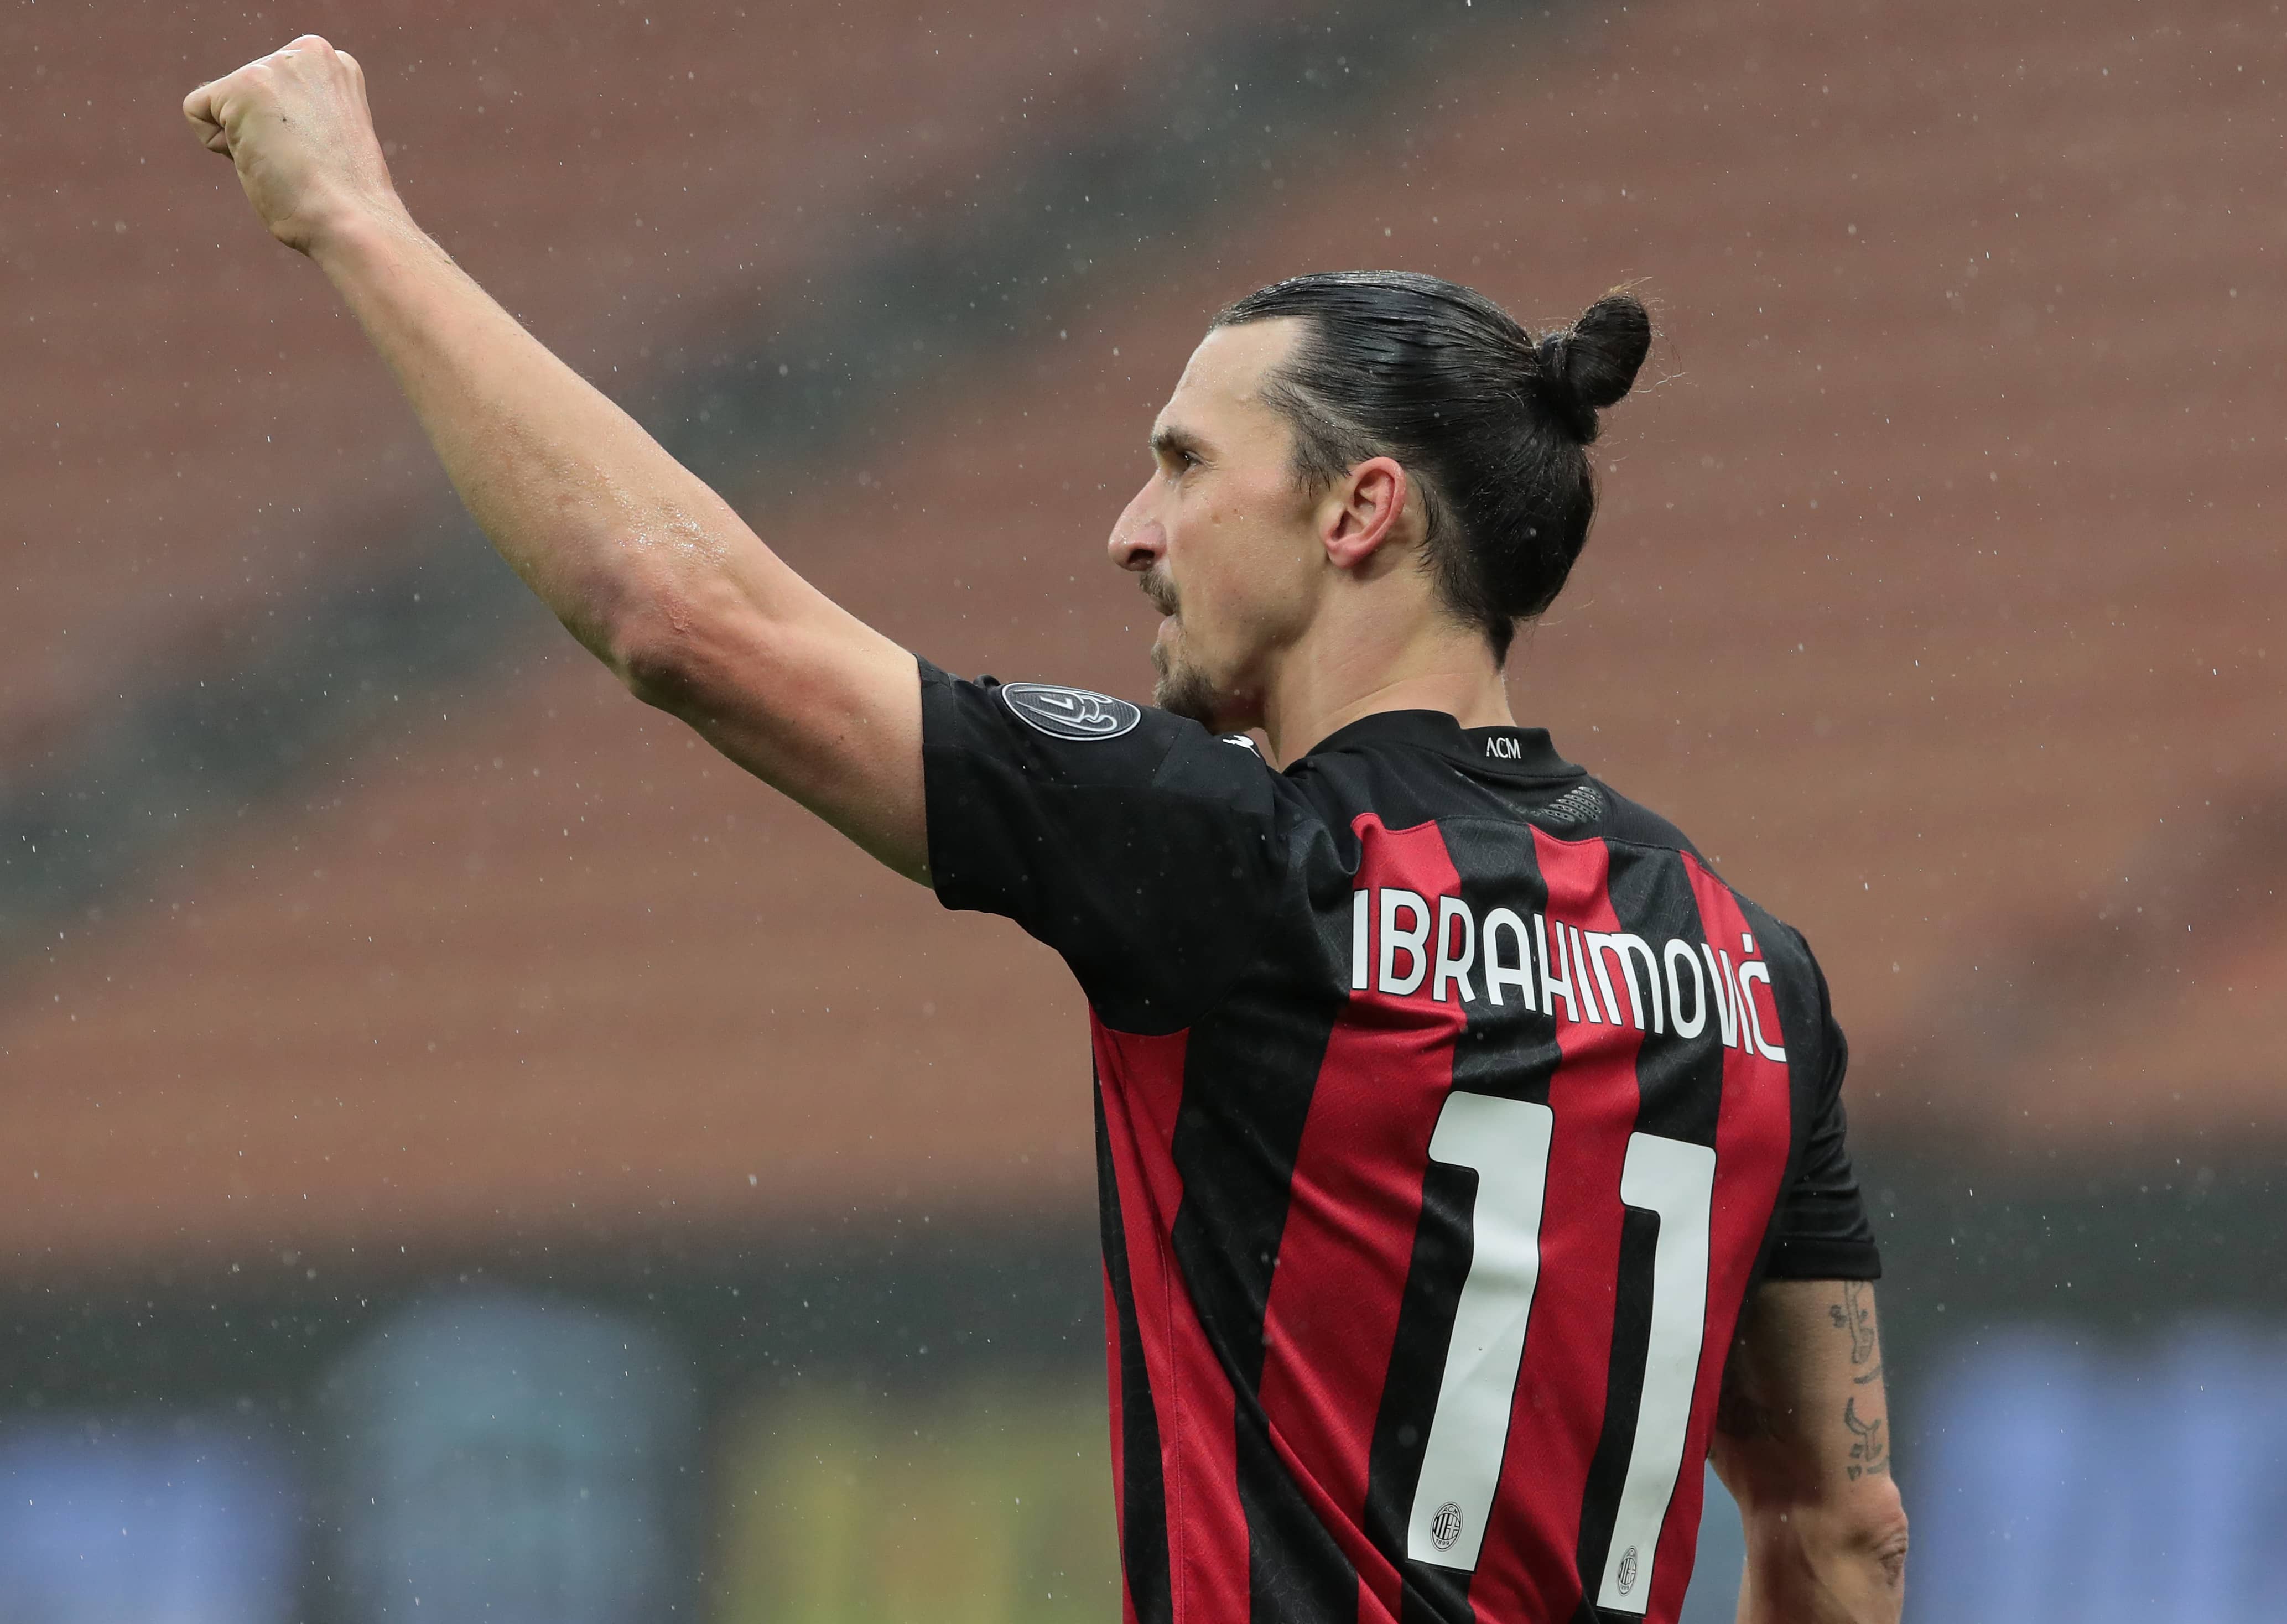 Serie A, risultati 21a giornata: Ibrahimovic trascina il Milan. Lazio al quarto posto